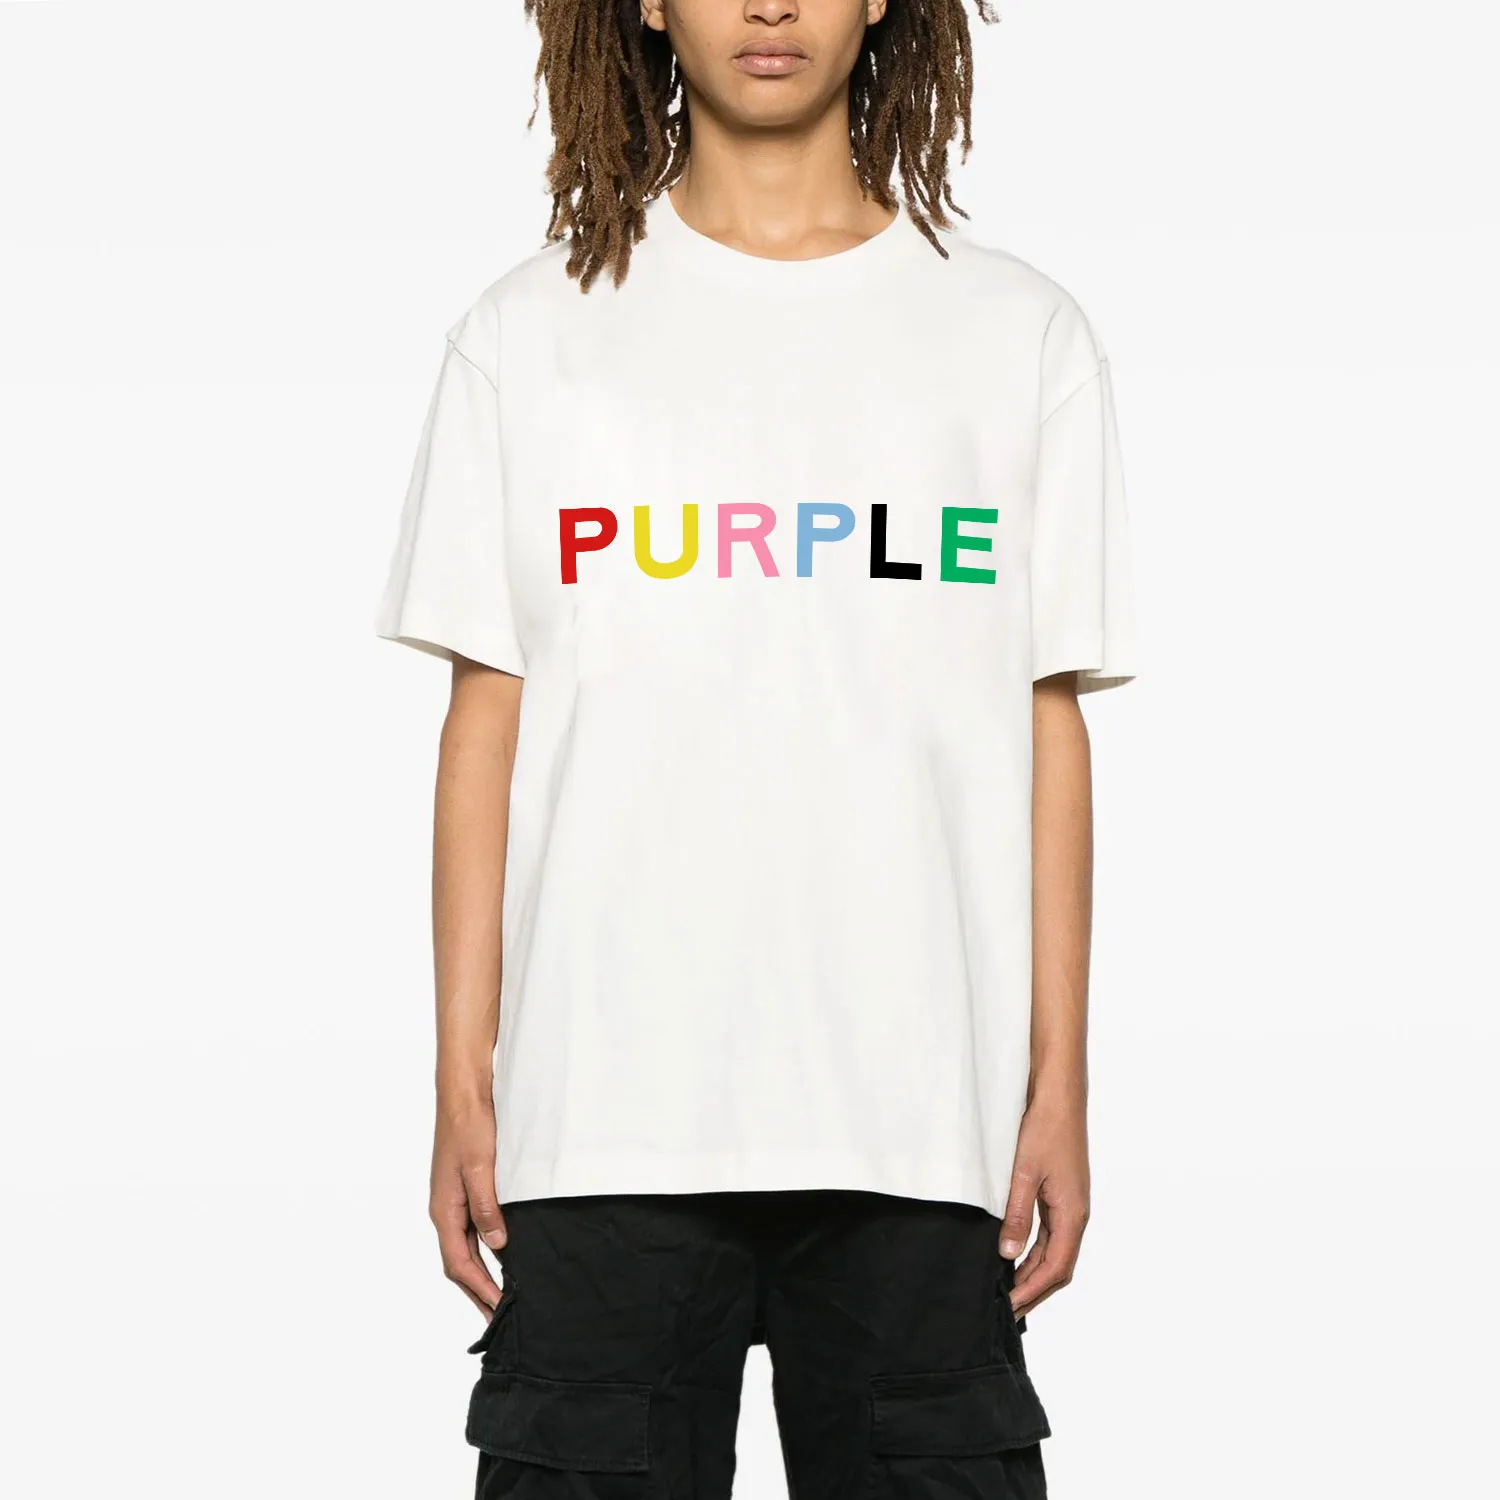 Tshirt de marque Purple Tshirt et créateur pour hommes T-shirt Pur031 T-shirt à manches courtes avec lettre colorée imprimement à la mode à manches courtes S-xxl